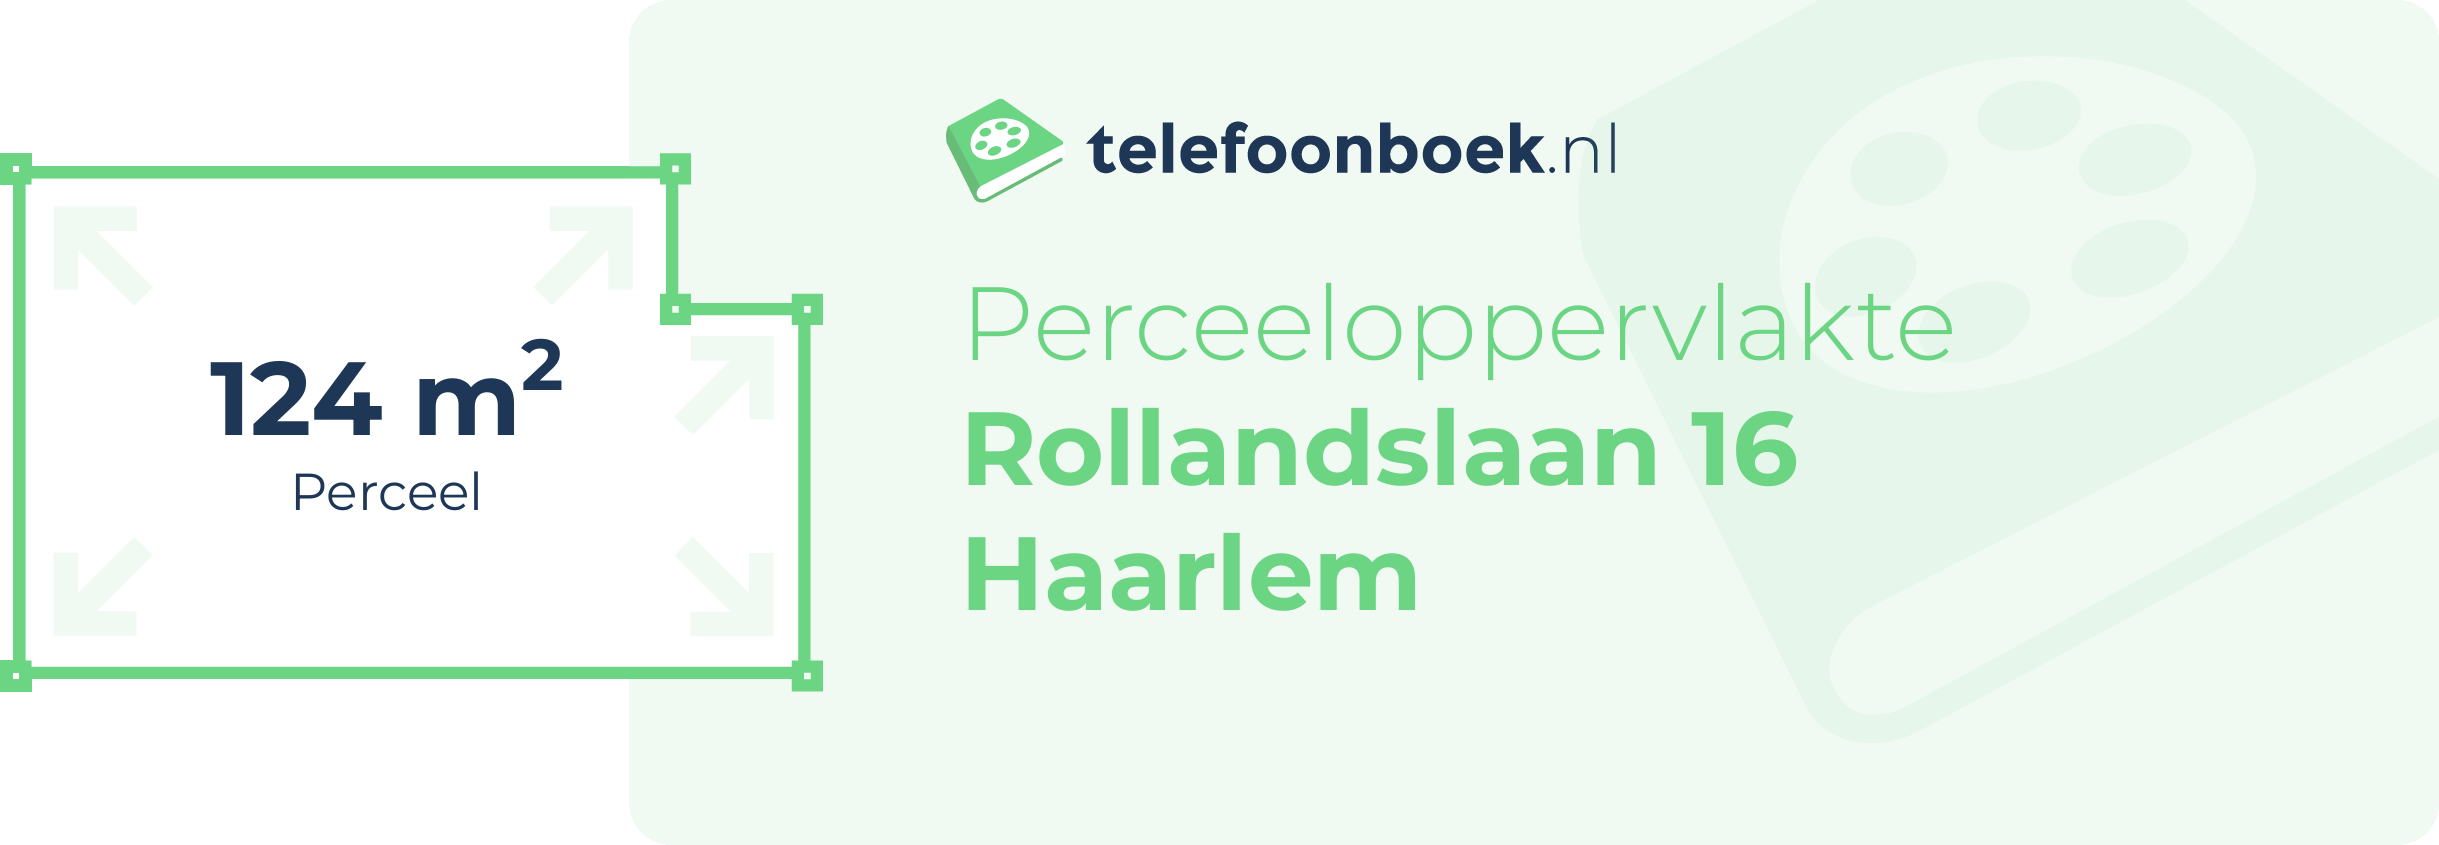 Perceeloppervlakte Rollandslaan 16 Haarlem